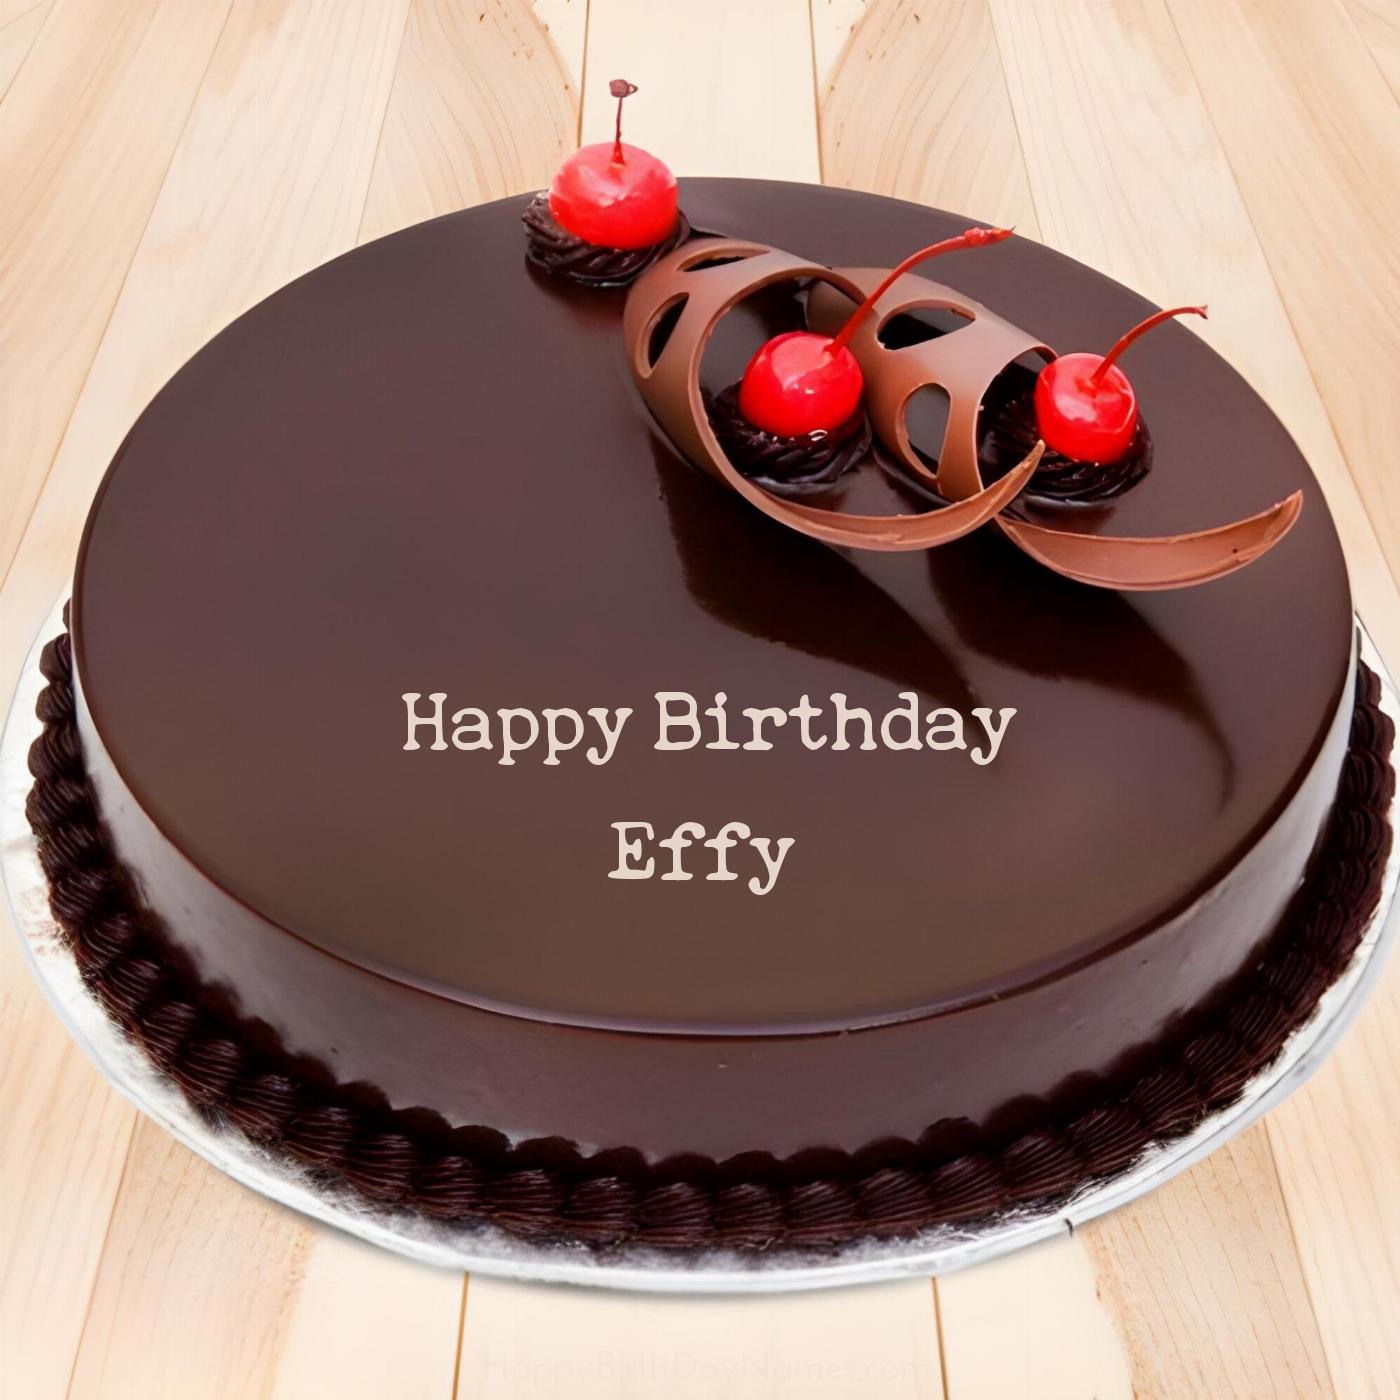 Happy Birthday Effy Chocolate Cherry Cake